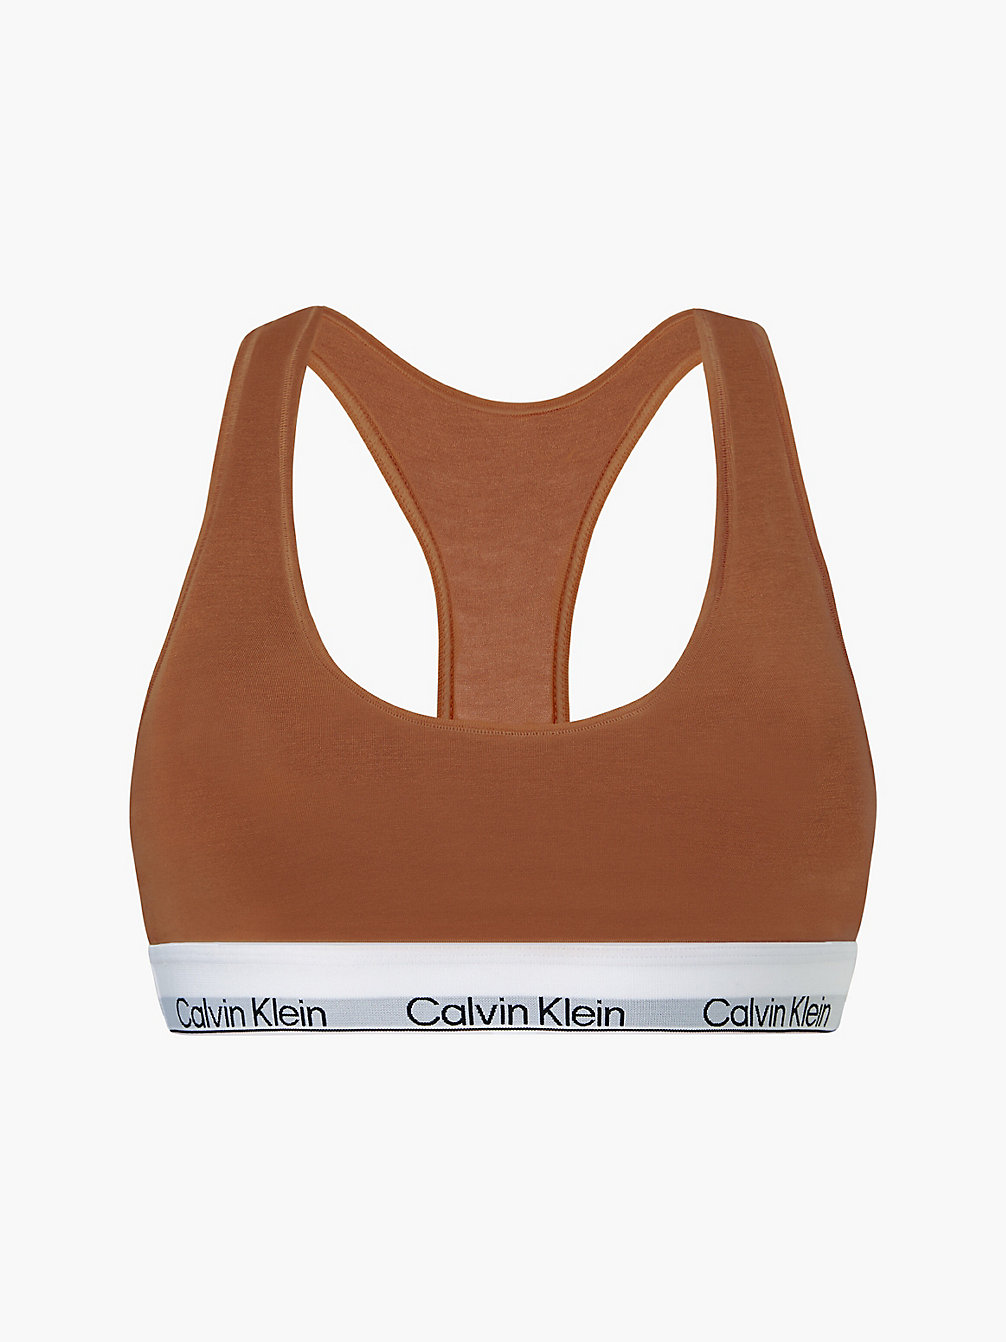 WARM BRONZE Bralette - Modern Cotton undefined dames Calvin Klein